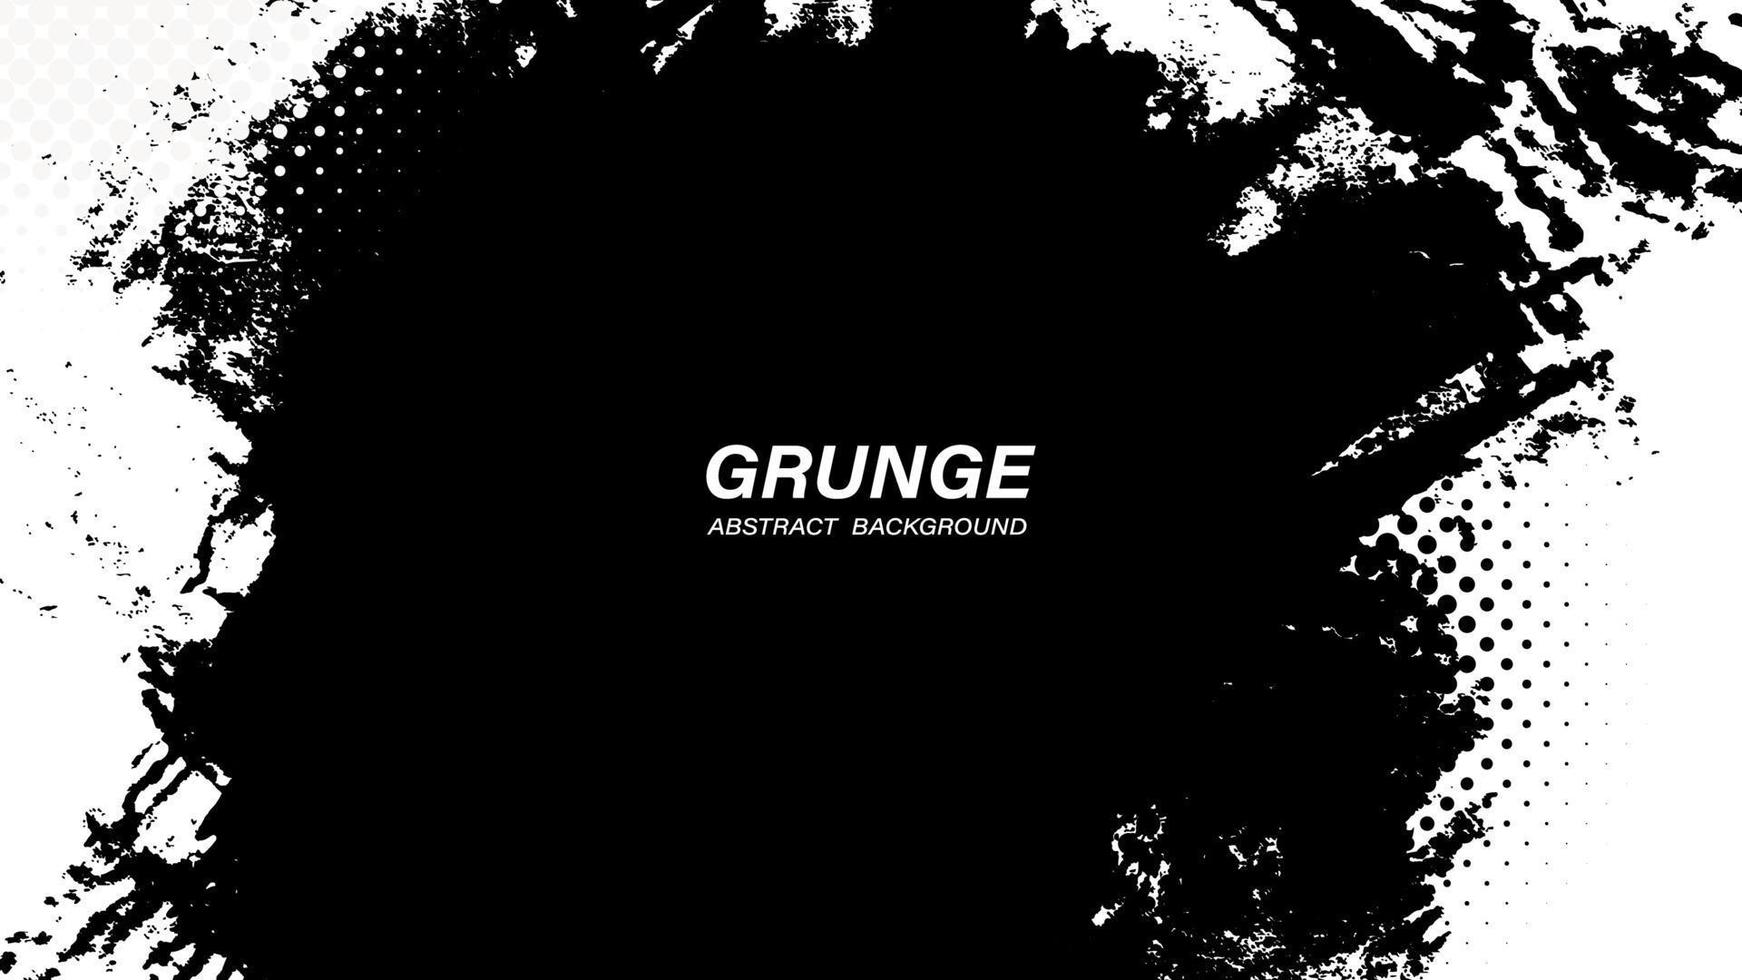 zwart-wit abstracte grunge achtergrond met halftone stijl. vector